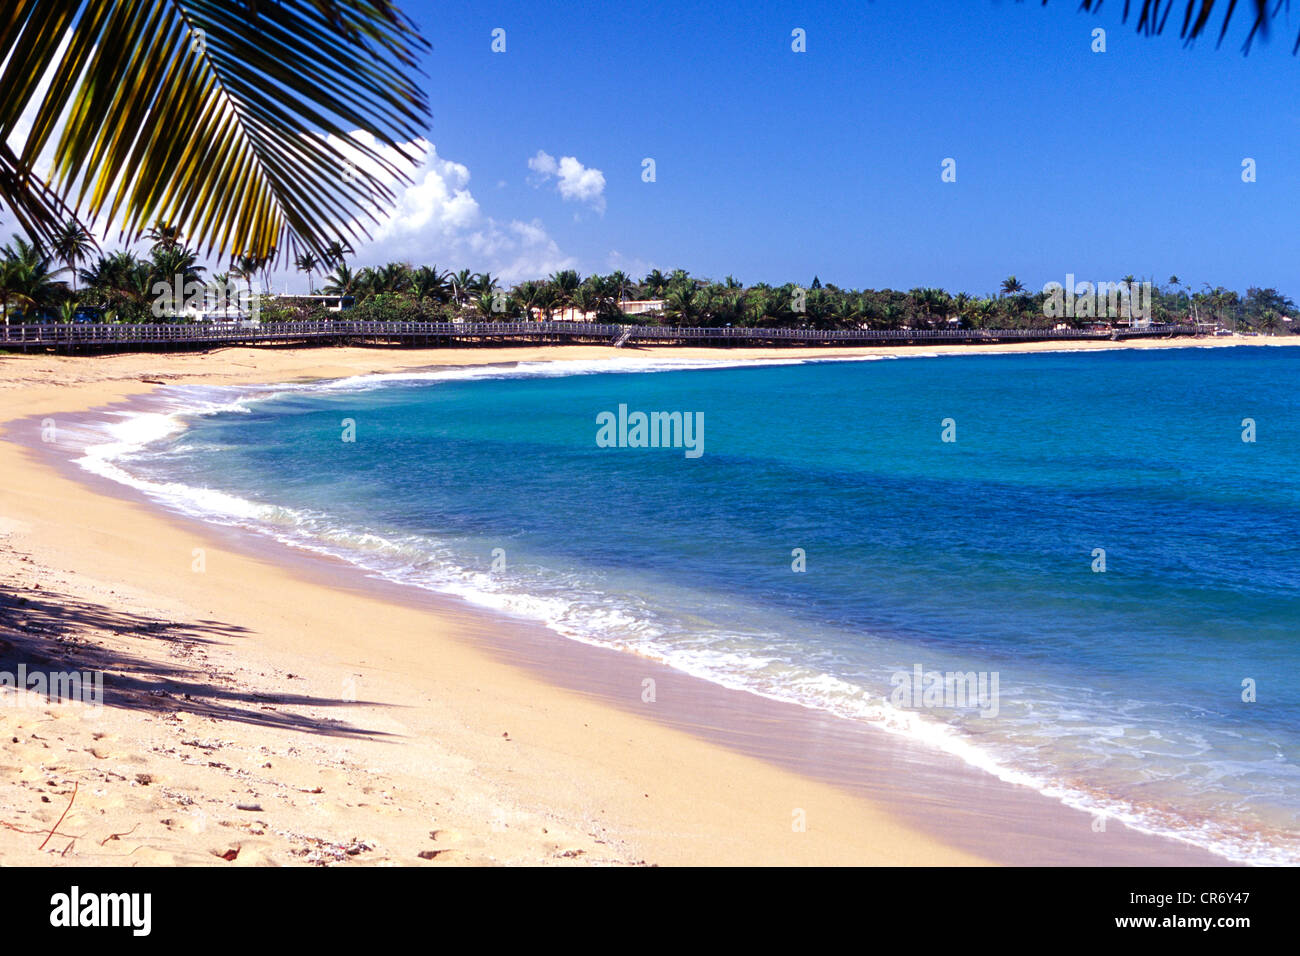 Promenade entlang dem Strand, Pinones, Puerto Rico Stockfoto